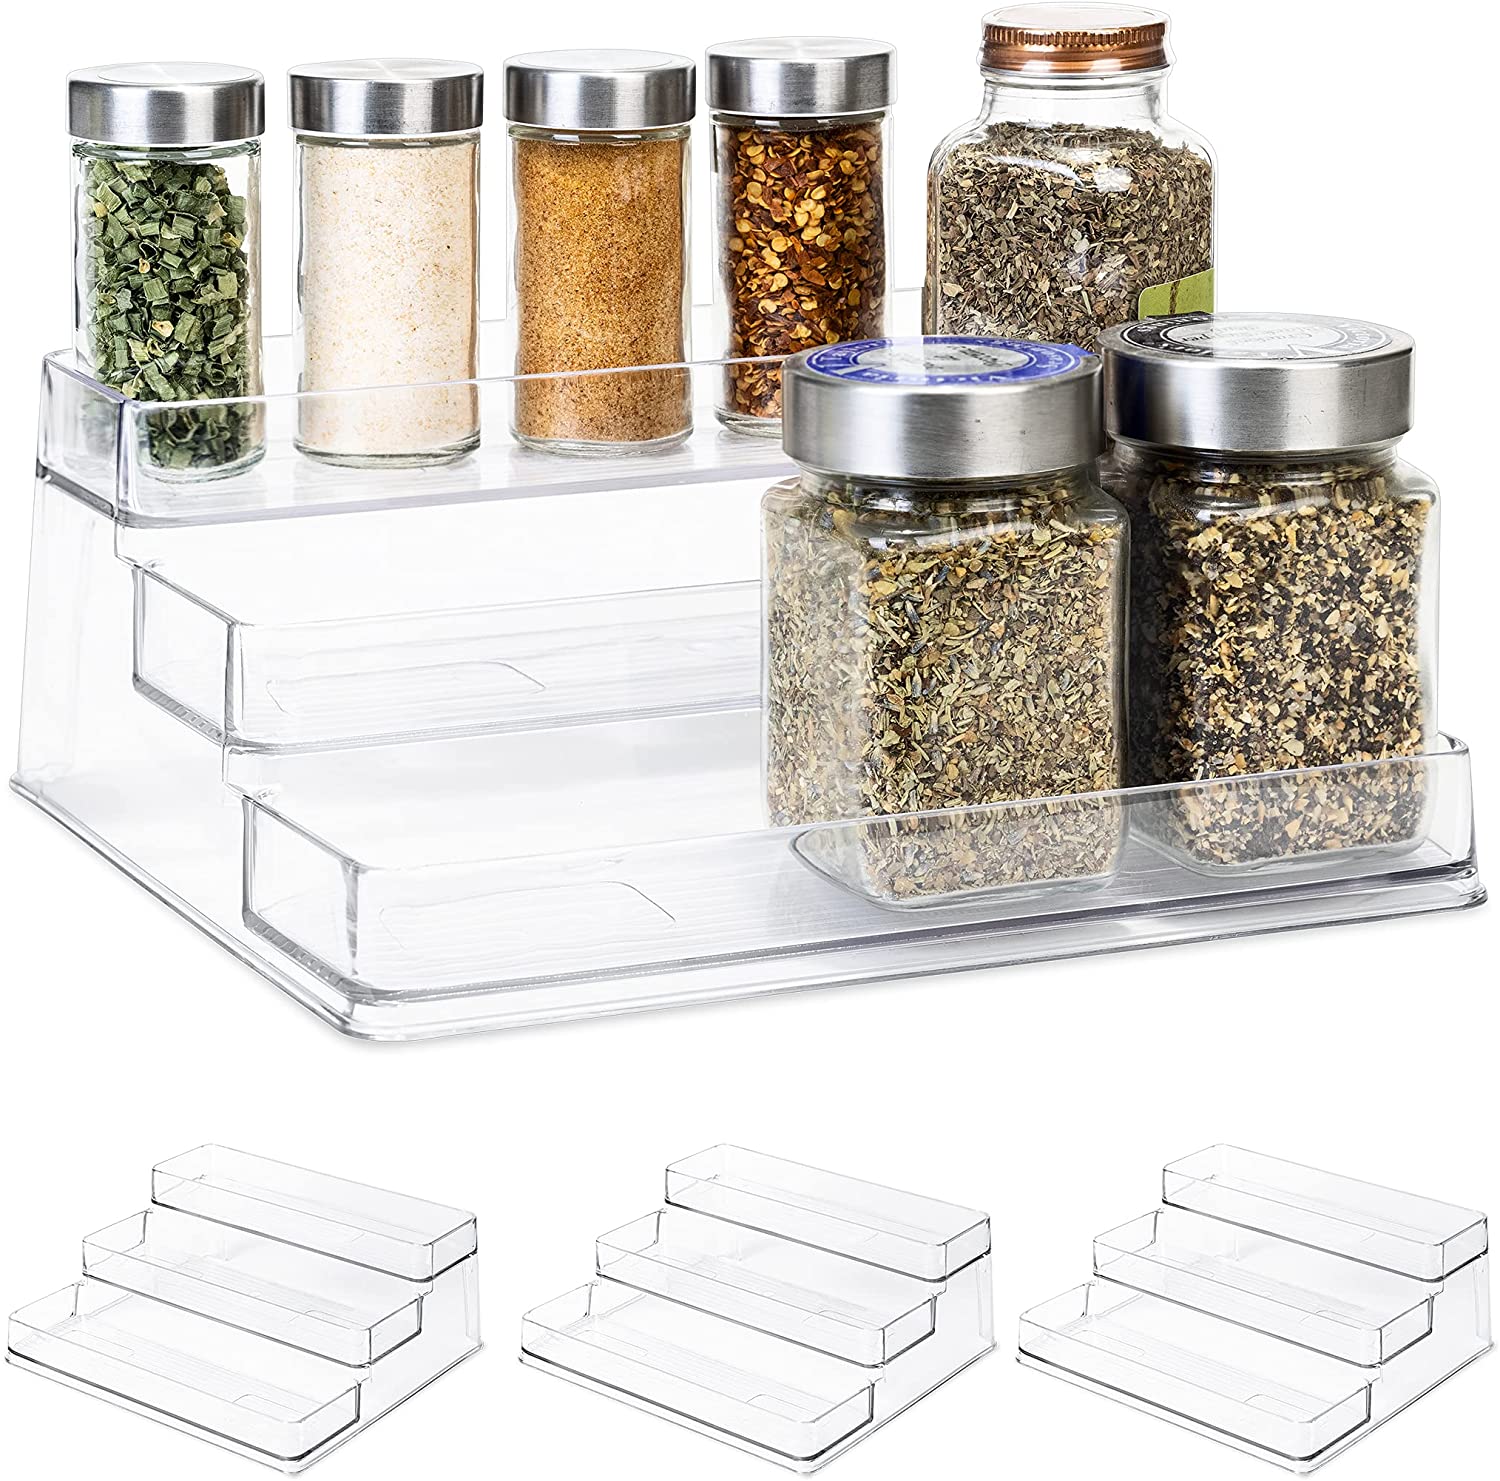 https://www.shopsmartdesign.com/cdn/shop/products/3-tier-plastic-spice-rack-clear-smart-design-kitchen-8003401as4-incrementing-number-908237.jpg?v=1679346308